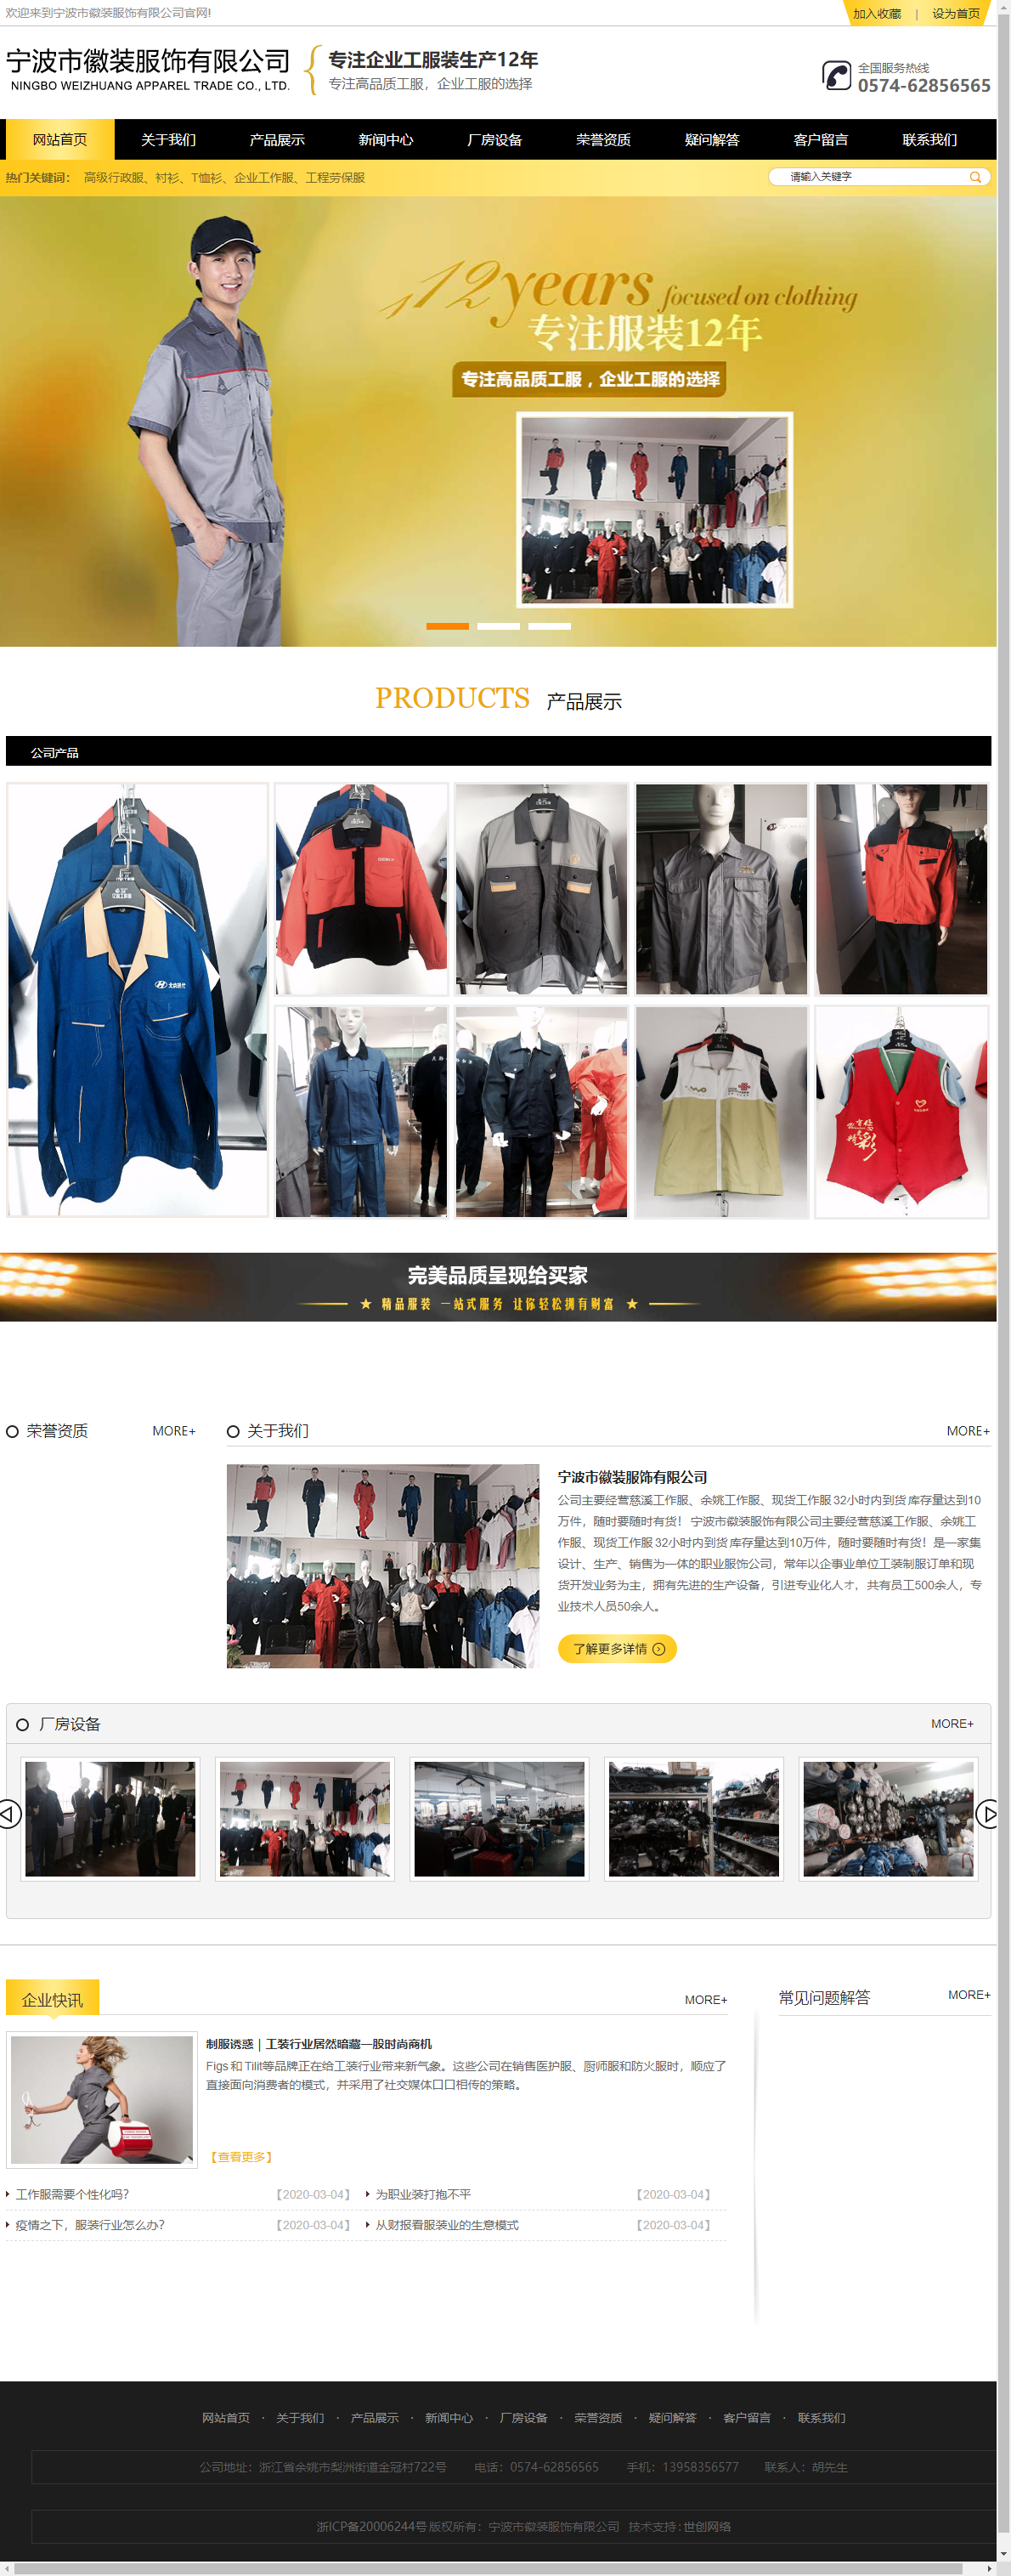 宁波市徽装服饰有限公司网站案例